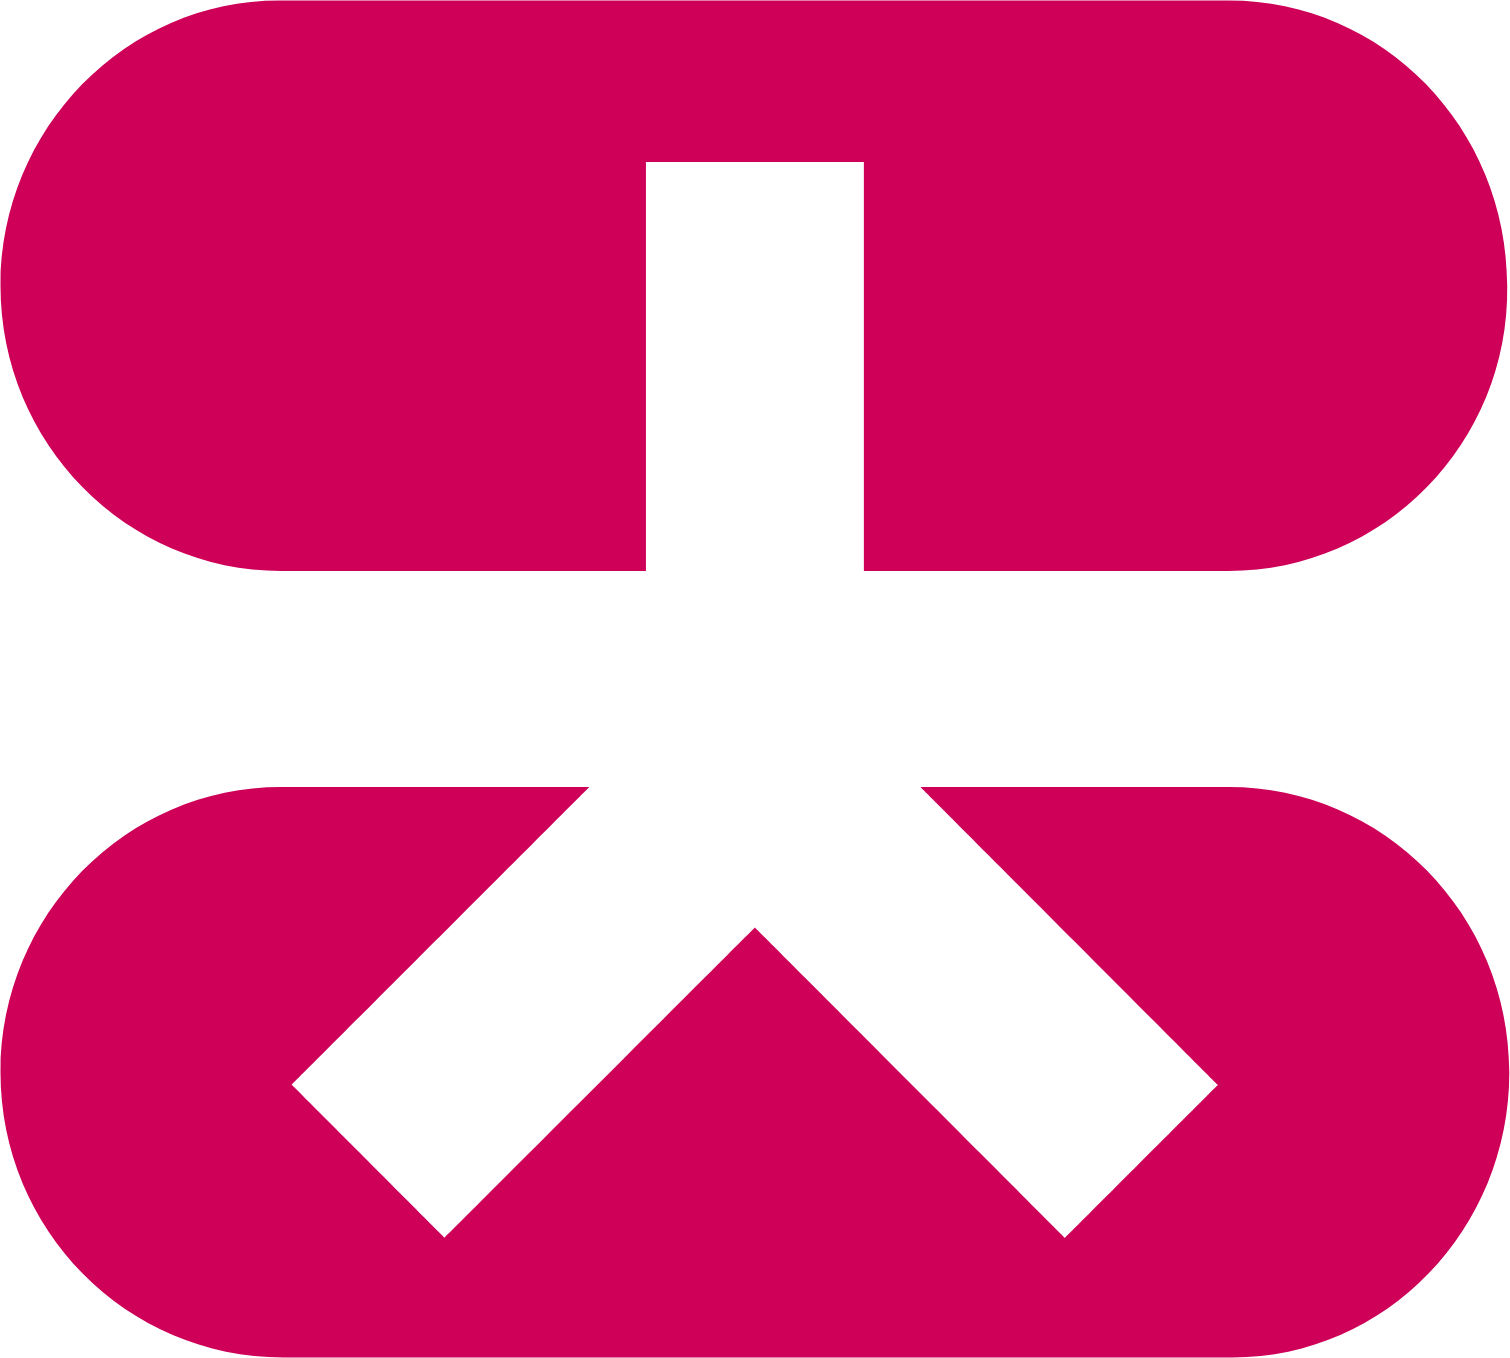 Dah Sing Banking Group logo (PNG transparent)